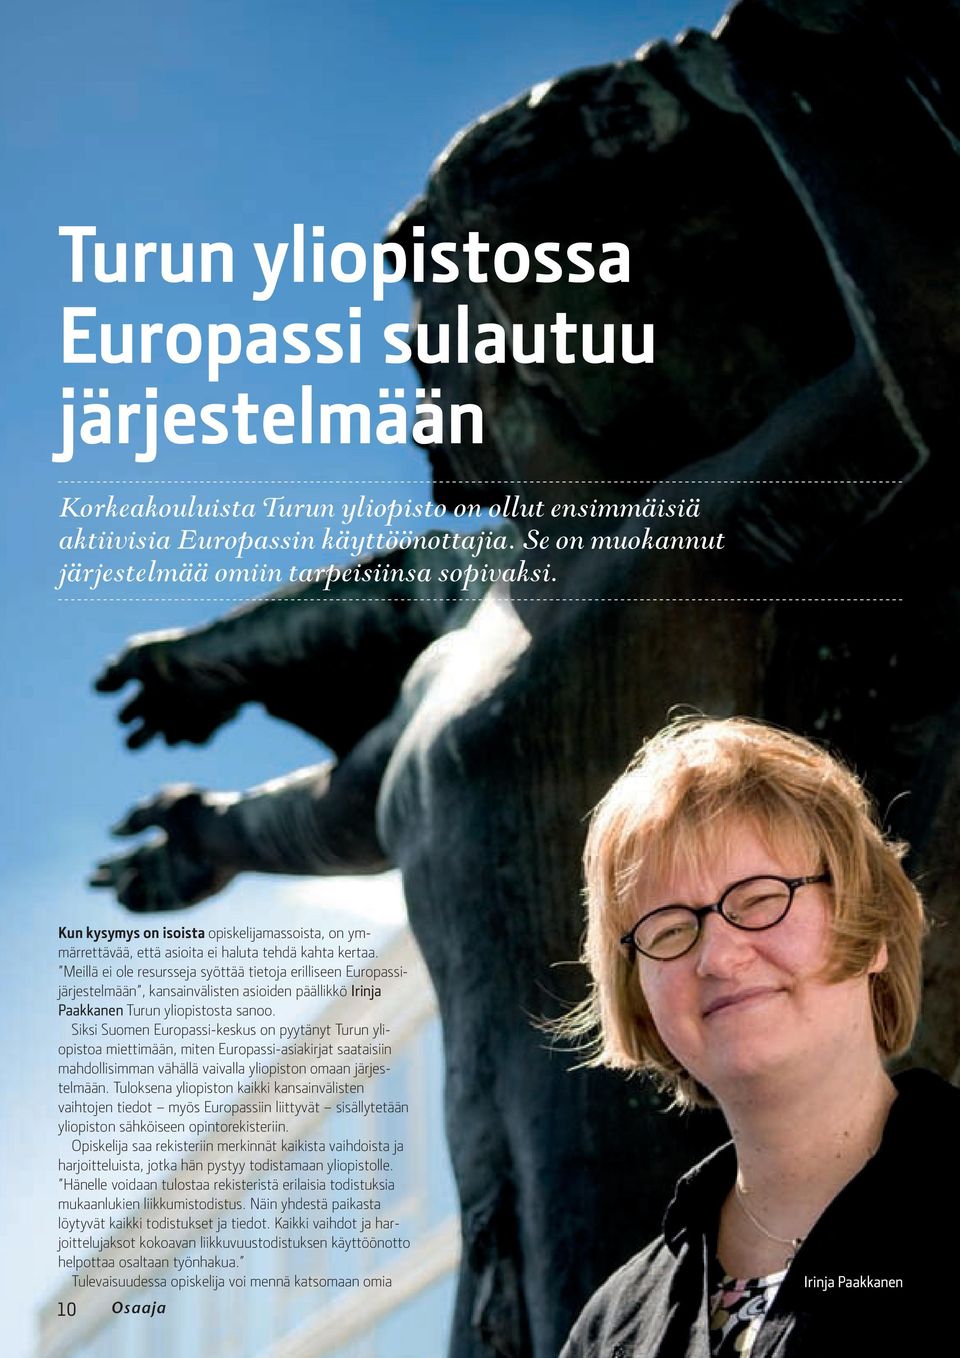 Meillä ei ole resursseja syöttää tietoja erilliseen Europassijärjestelmään, kansainvälisten asioiden päällikkö Irinja Paakkanen Turun yliopistosta sanoo.